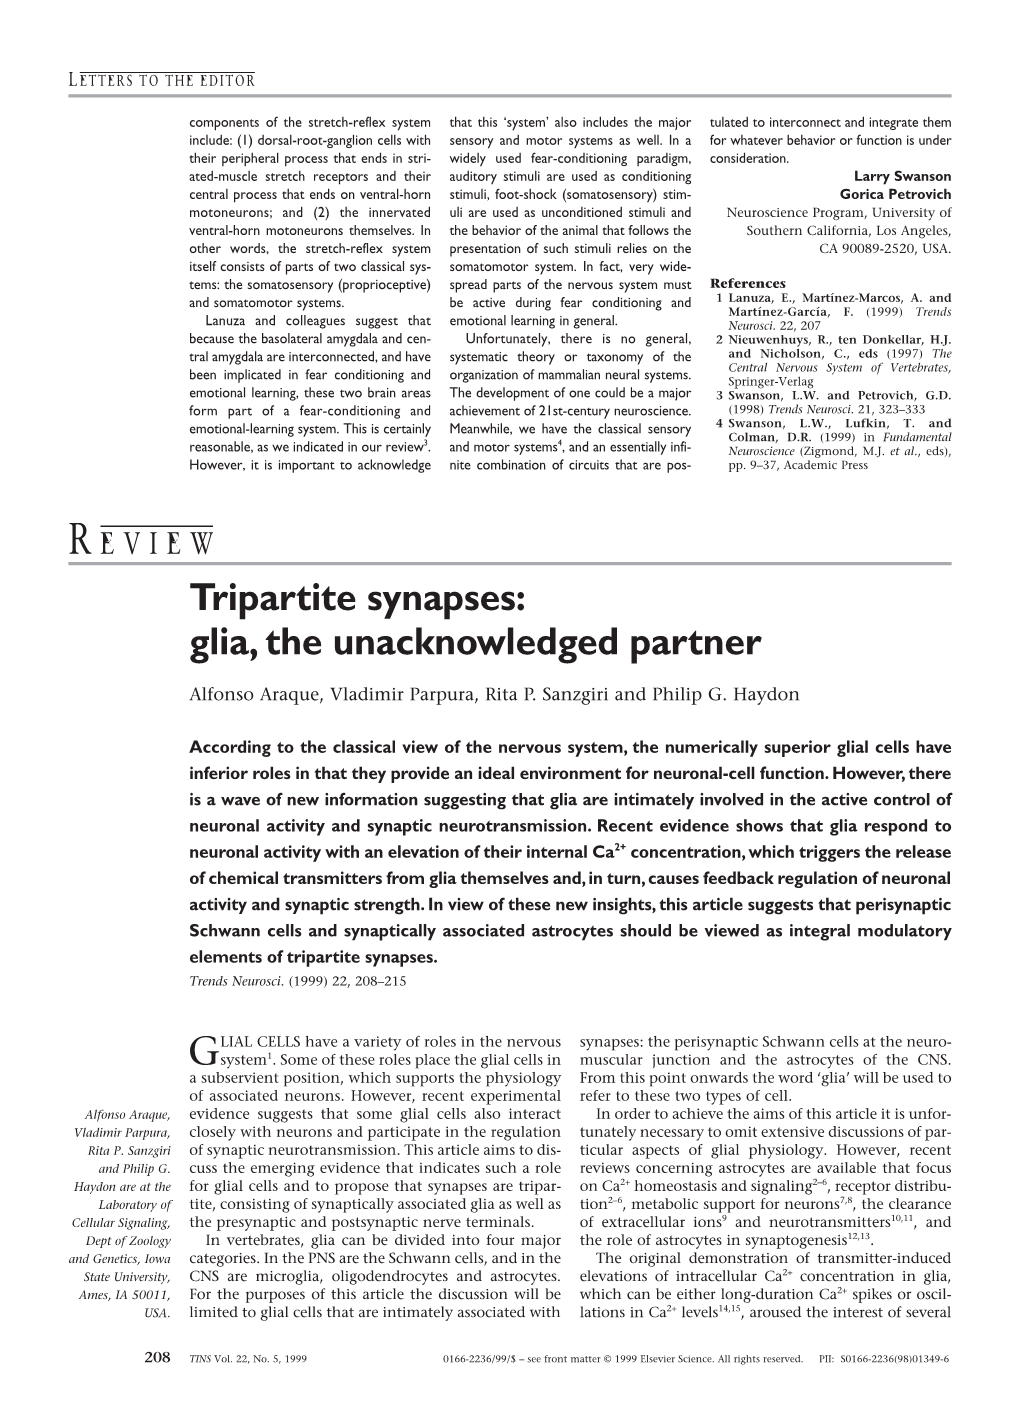 Tripartite Synapses: Glia, the Unacknowledged Partner